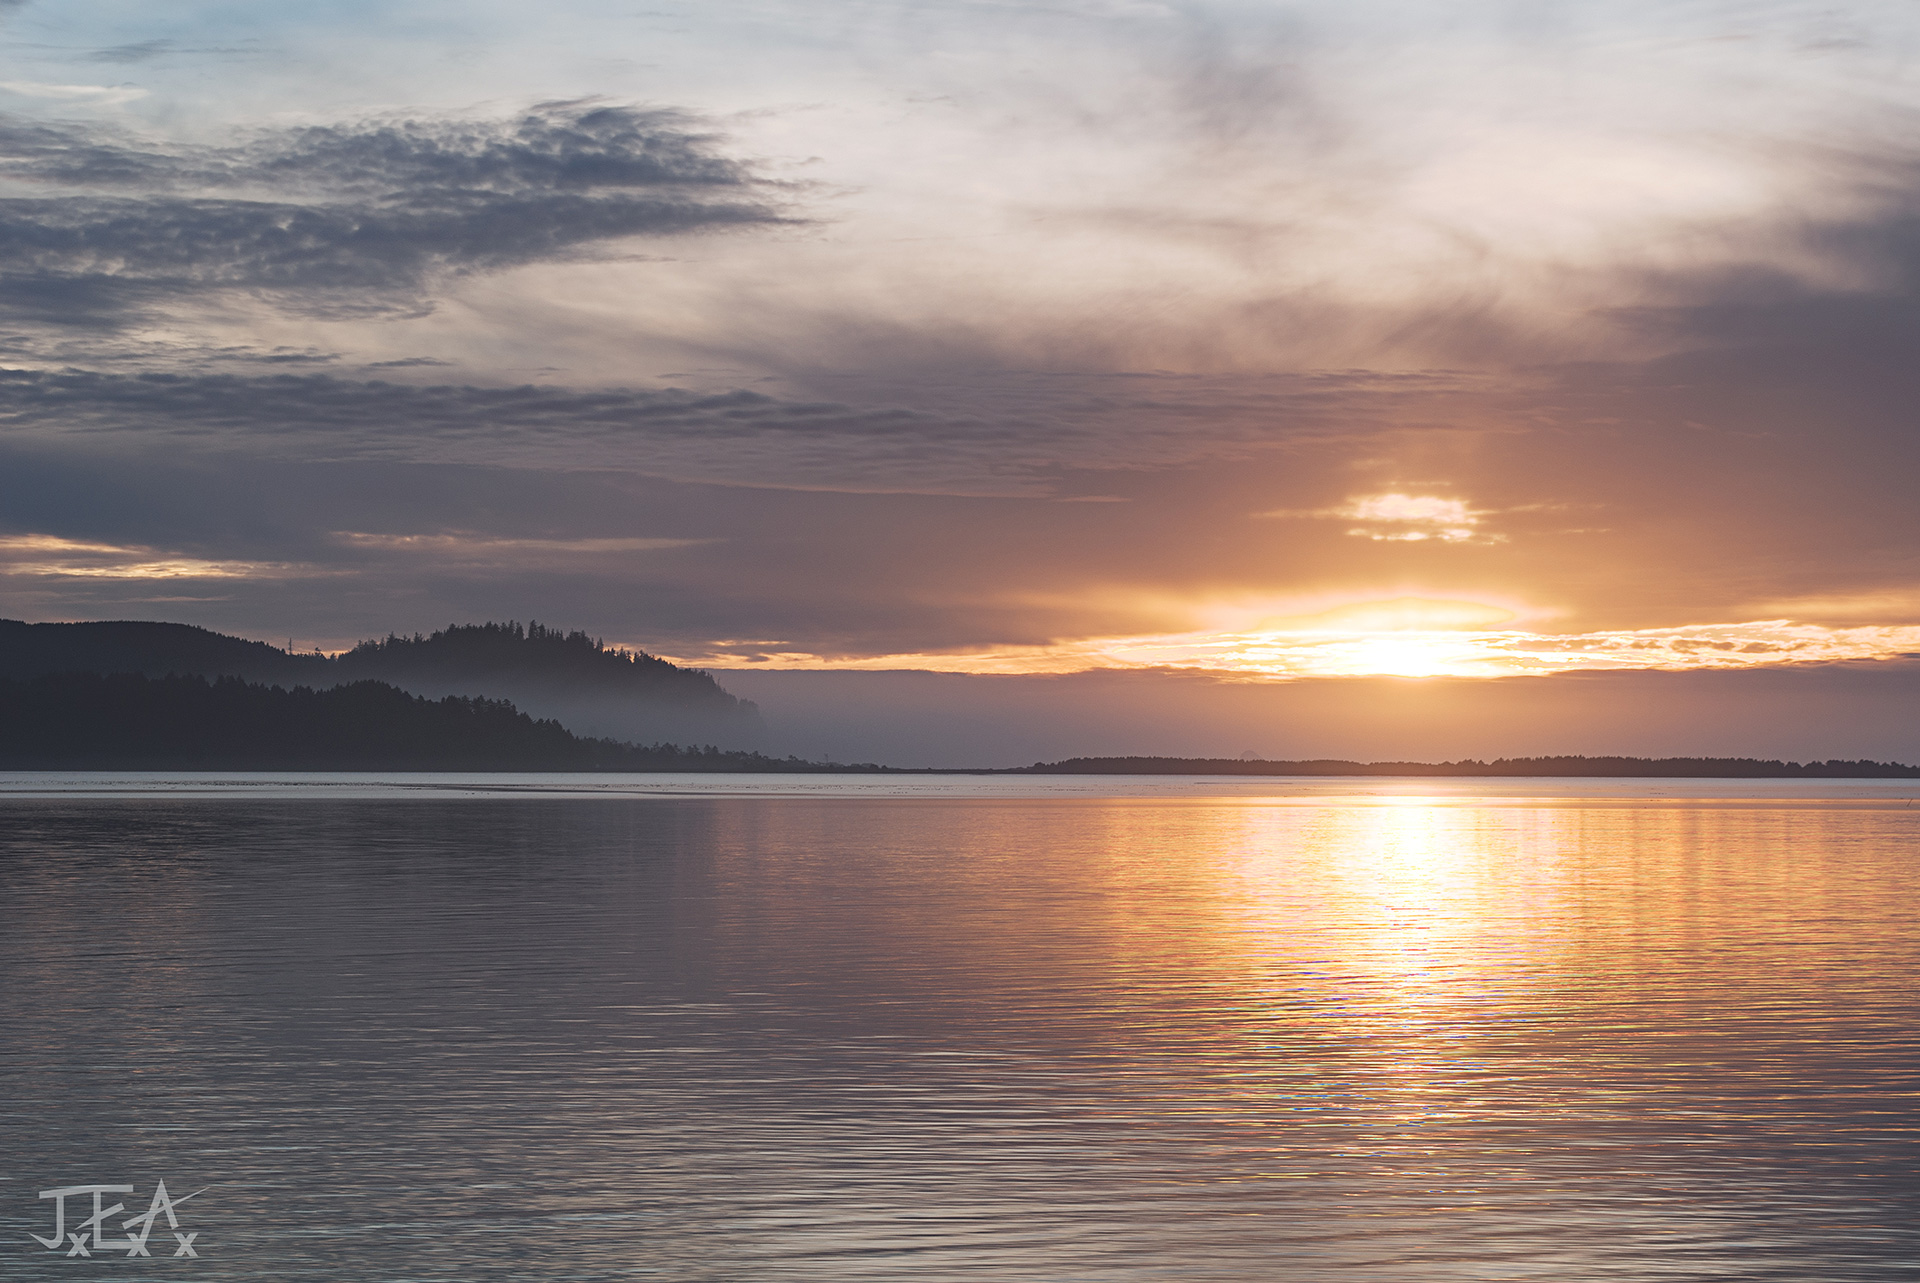 A wide shot of the Tillamook bay at sunset.